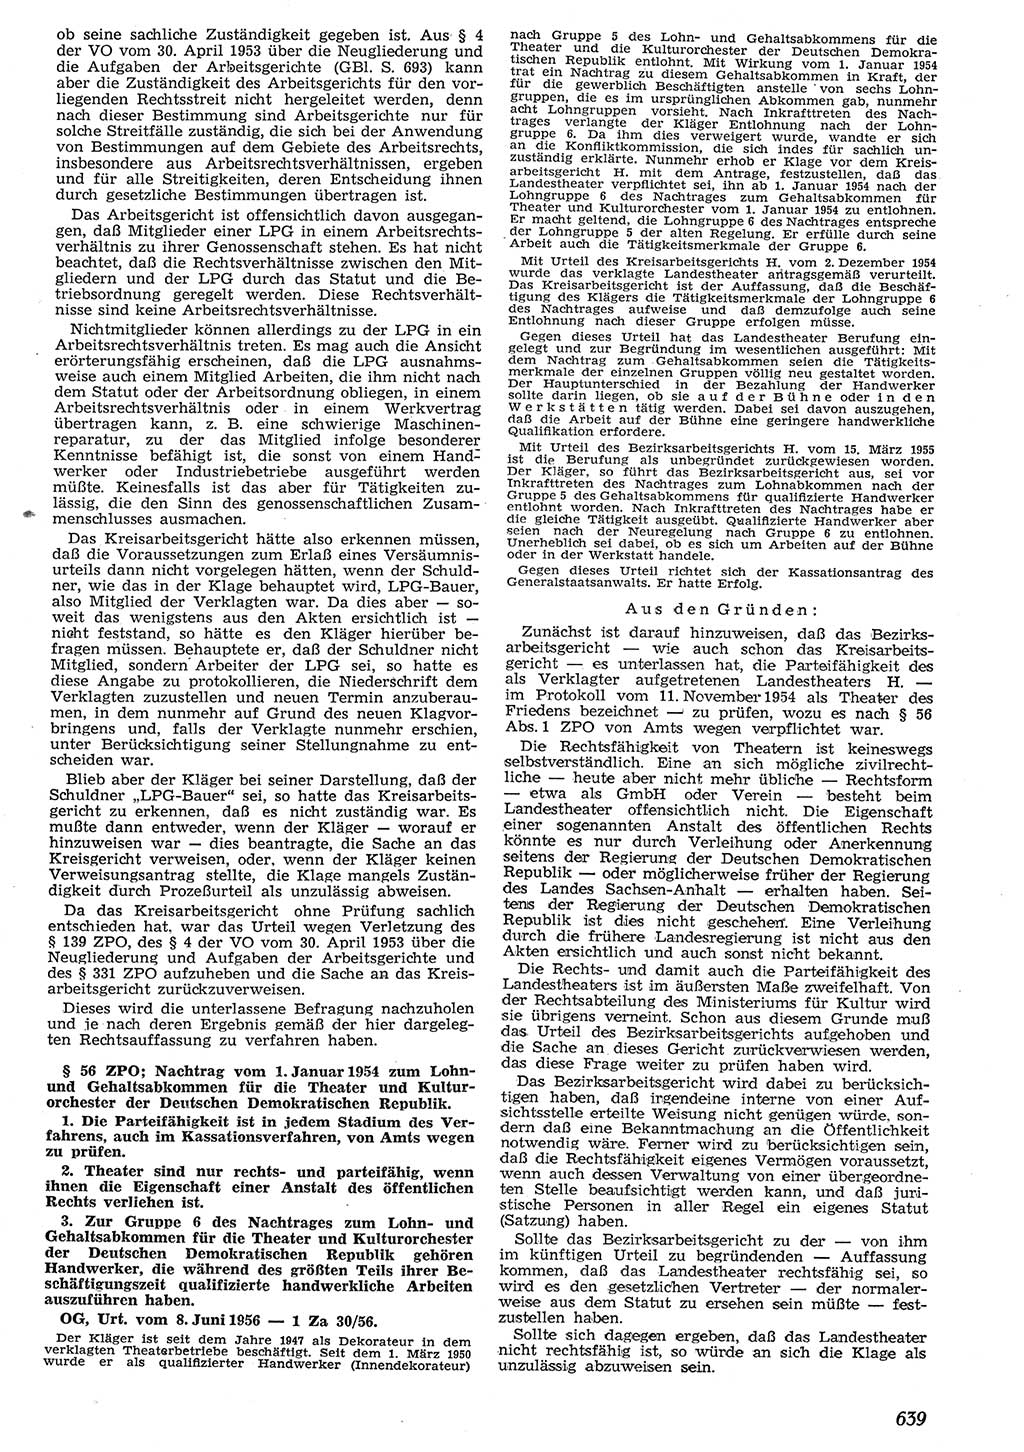 Neue Justiz (NJ), Zeitschrift für Recht und Rechtswissenschaft [Deutsche Demokratische Republik (DDR)], 10. Jahrgang 1956, Seite 639 (NJ DDR 1956, S. 639)